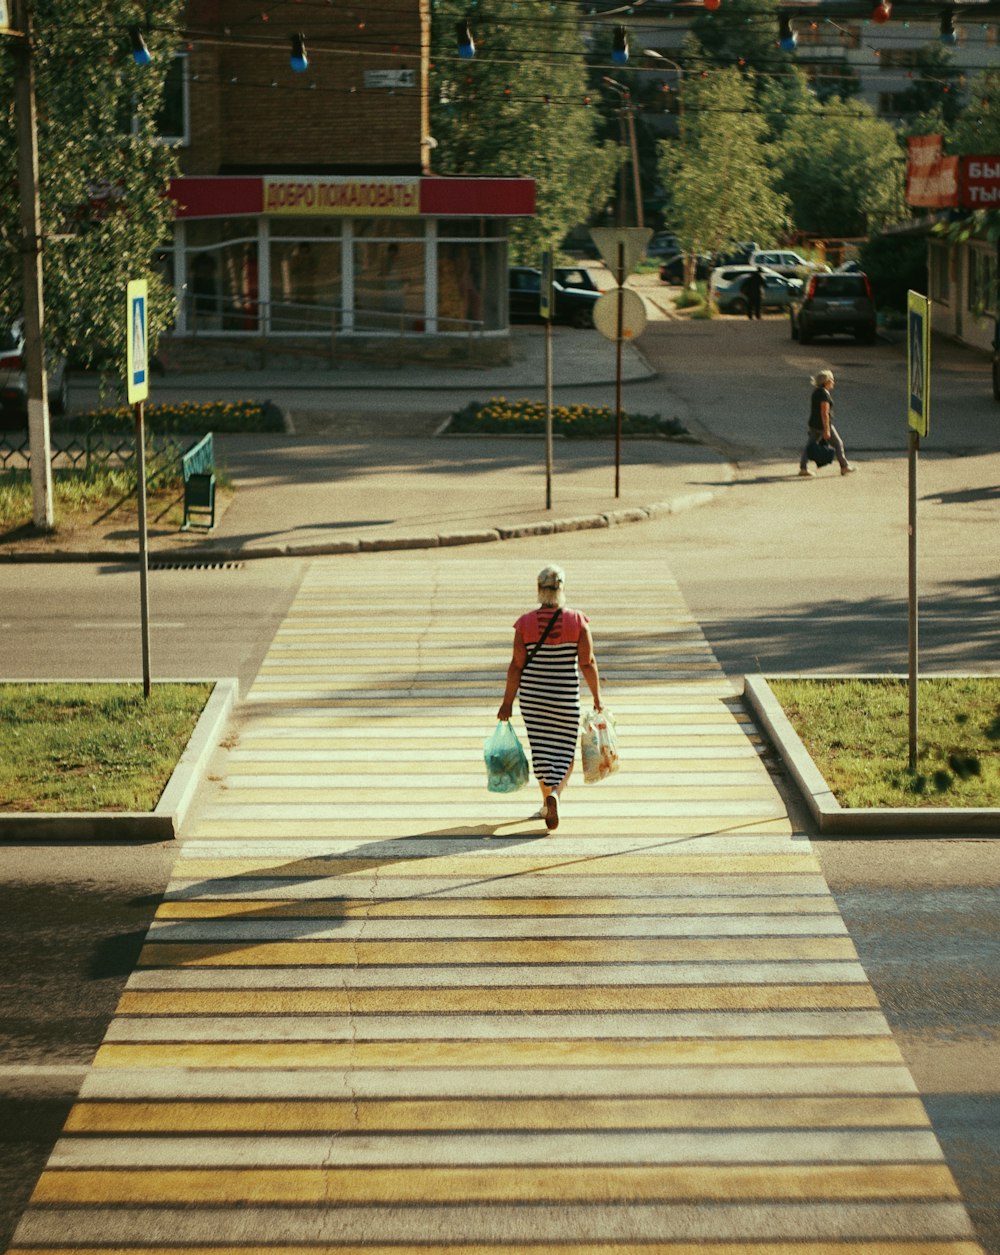 a person walking down a sidewalk